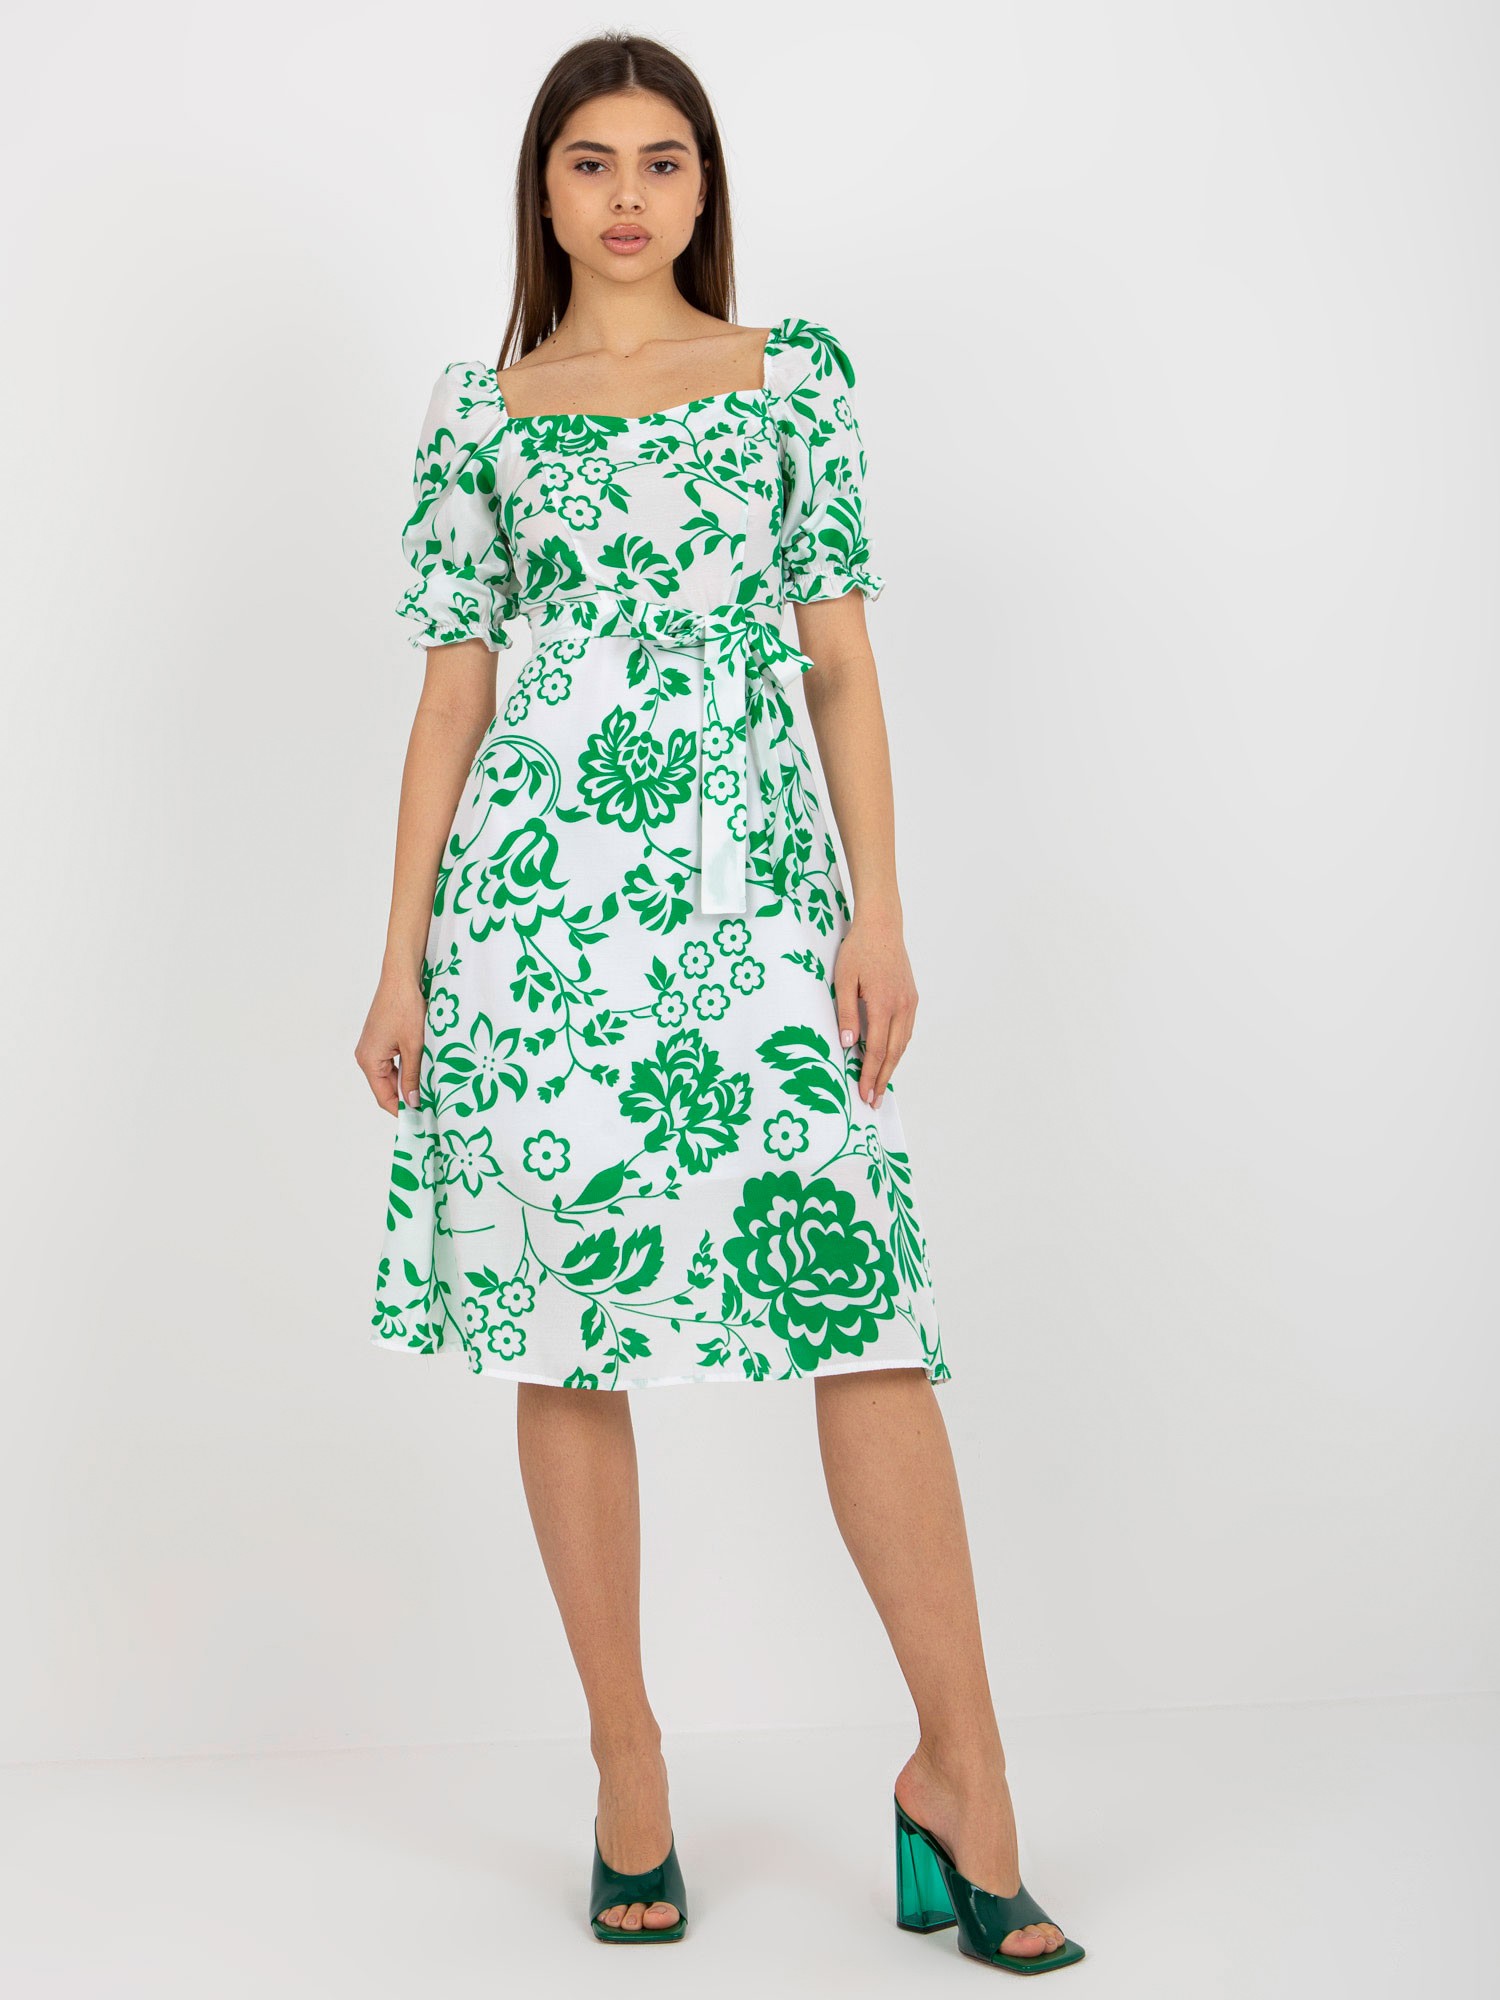 Bielo-zelené kvetované midi šaty s pásikom LK-SK-508944.45P-white-green Veľkosť: 42